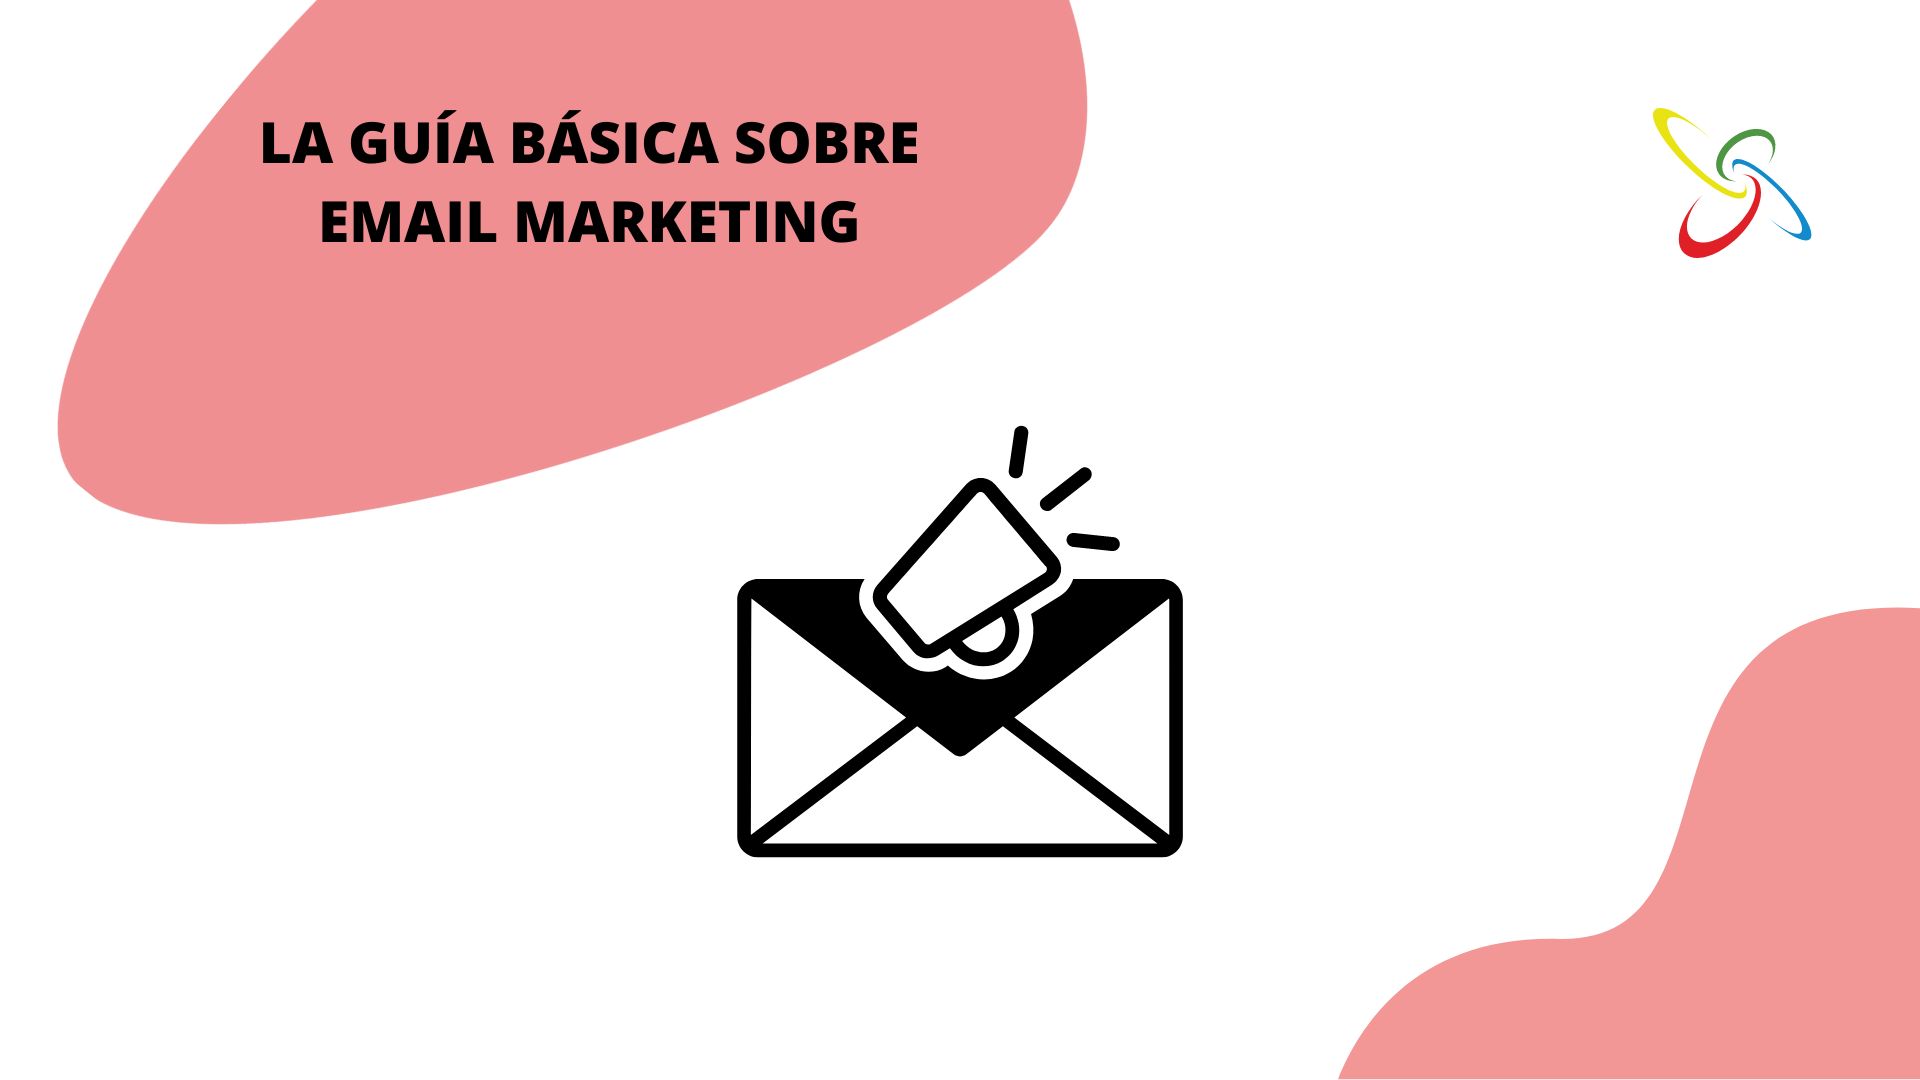 La guía básica sobre email marketing